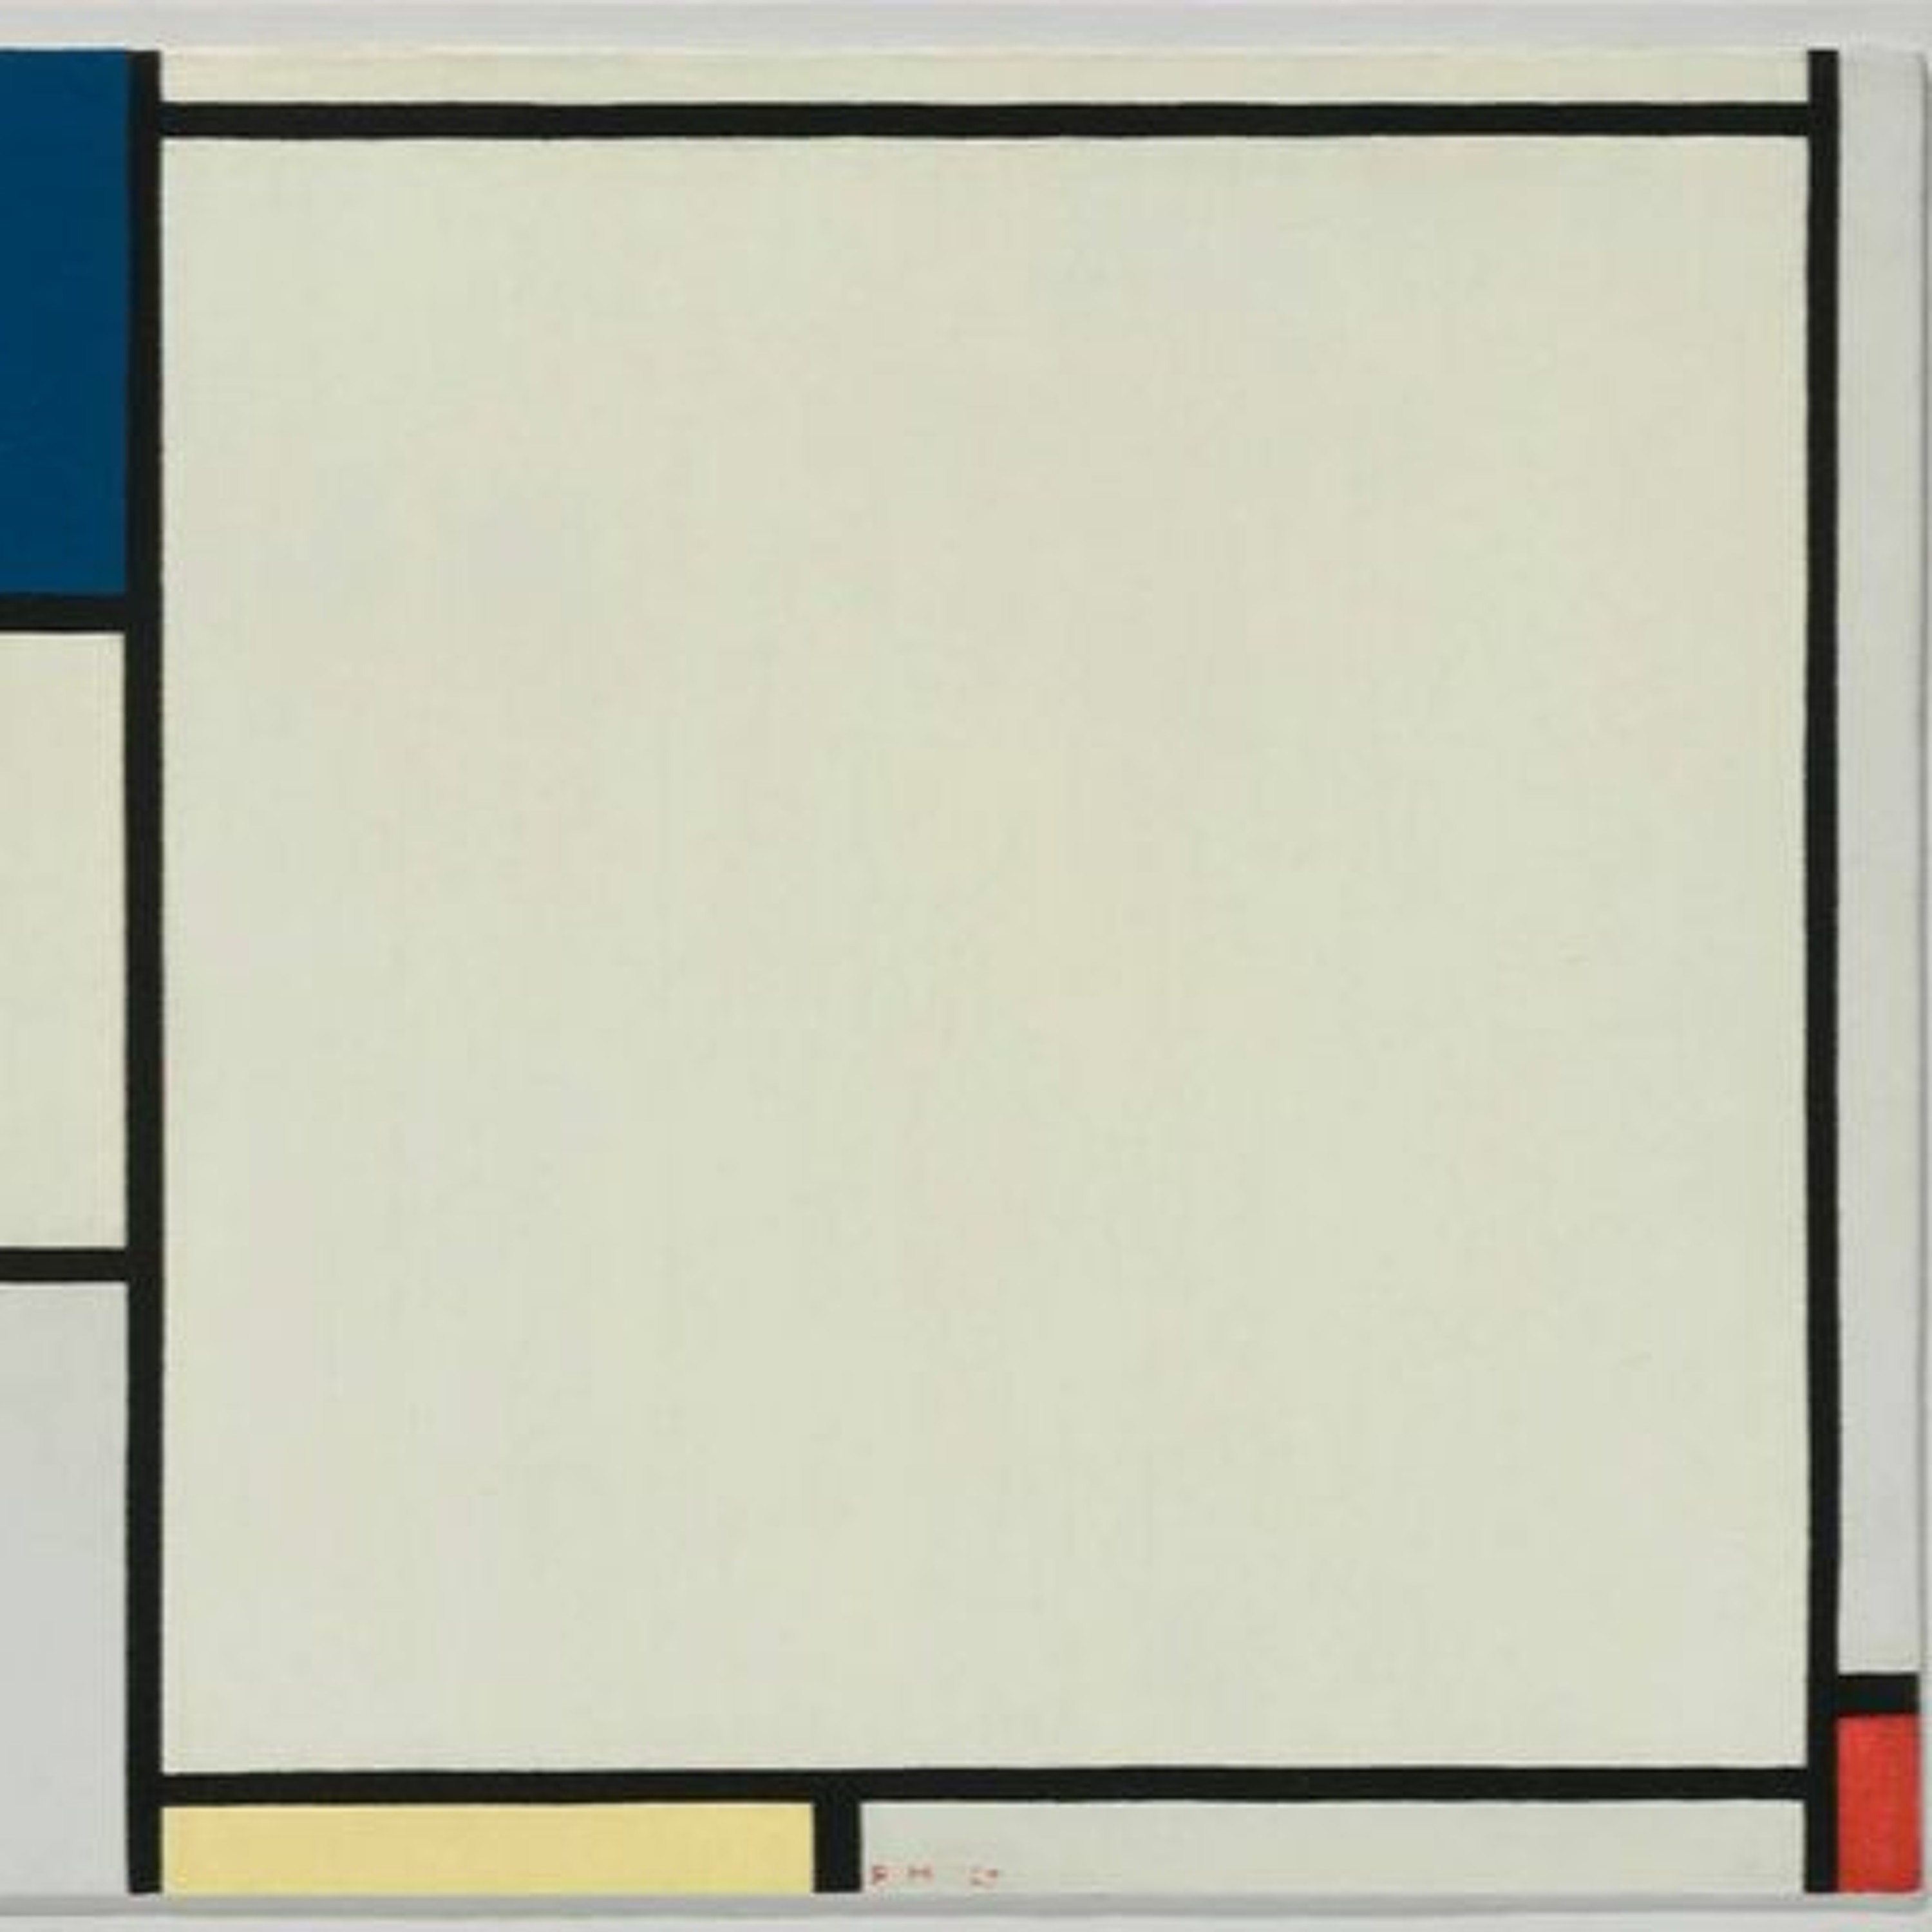 Ep. 10 - Piet Mondrian's 